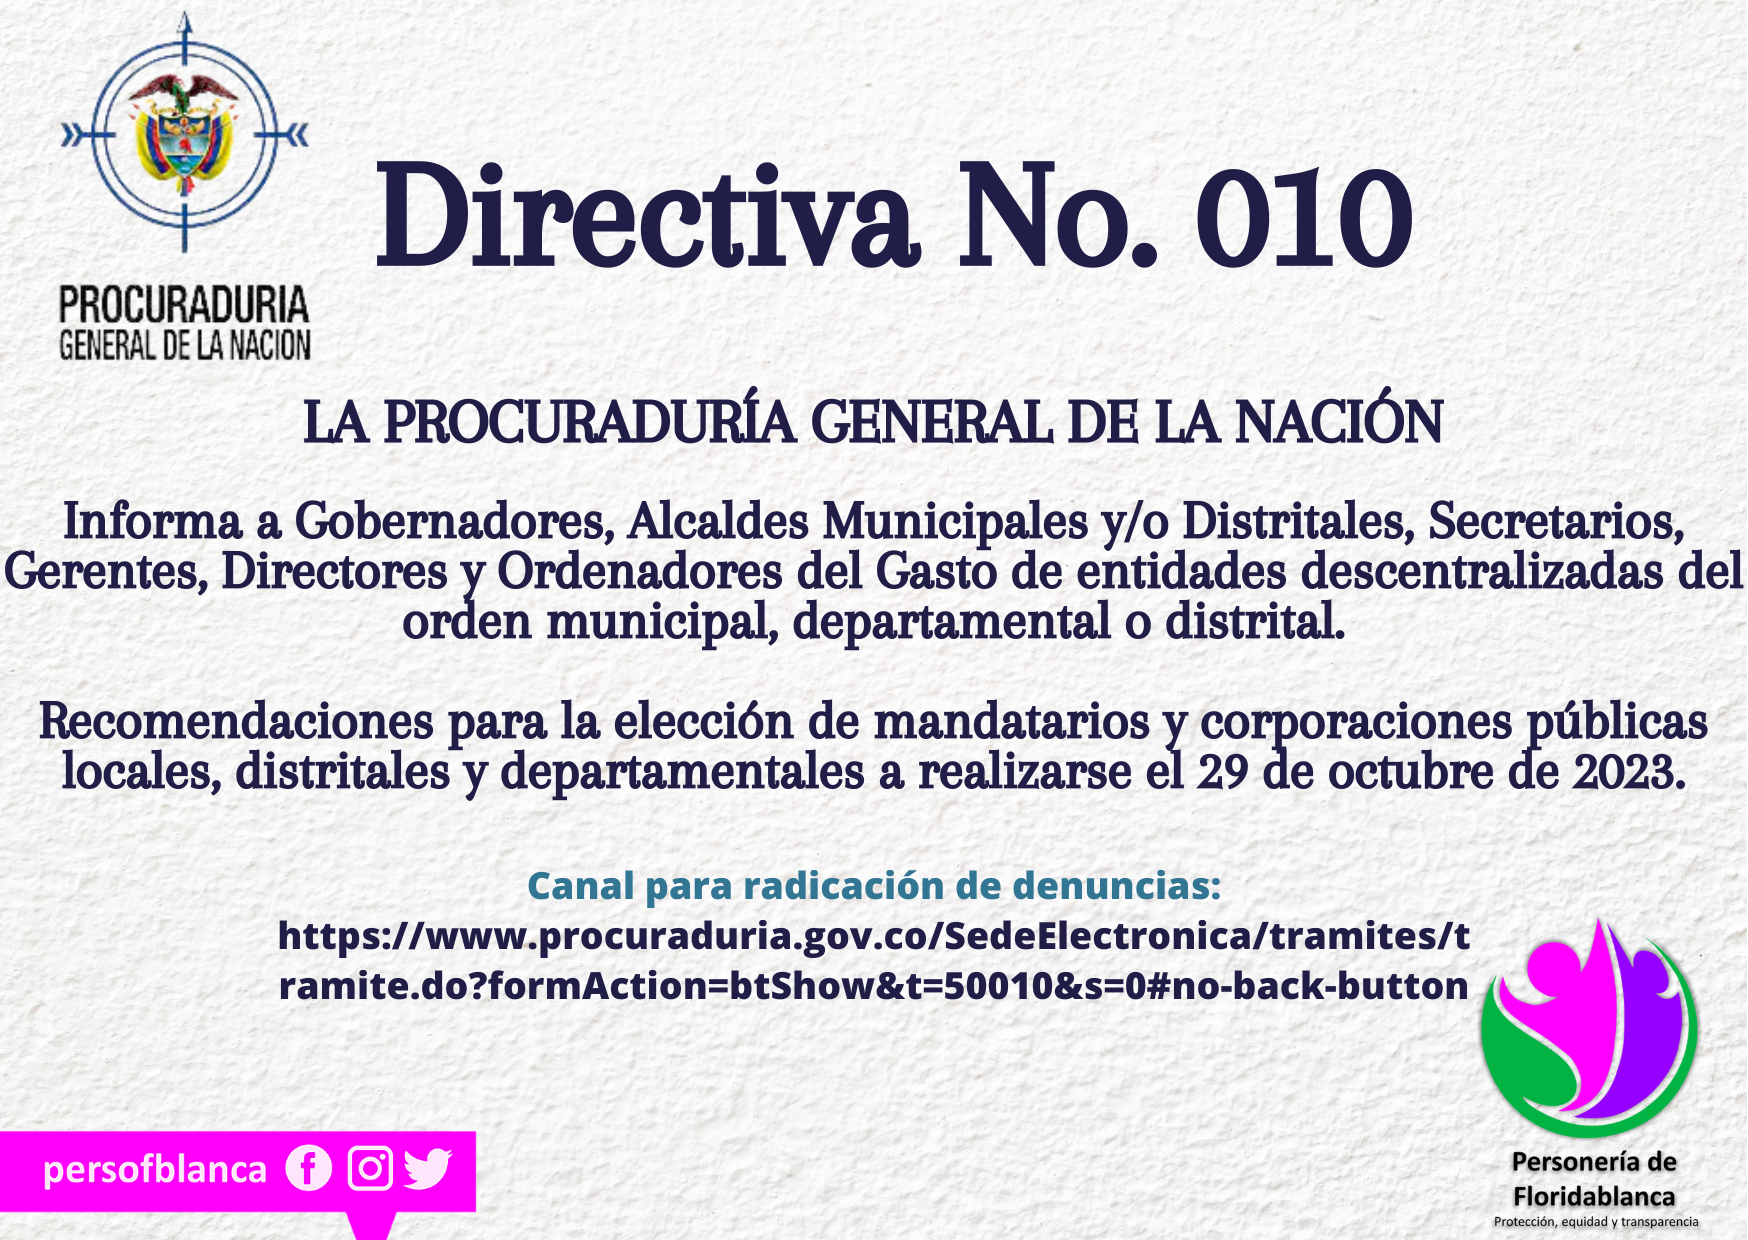 Directiva 010 de la Procuraduría General de la Nación